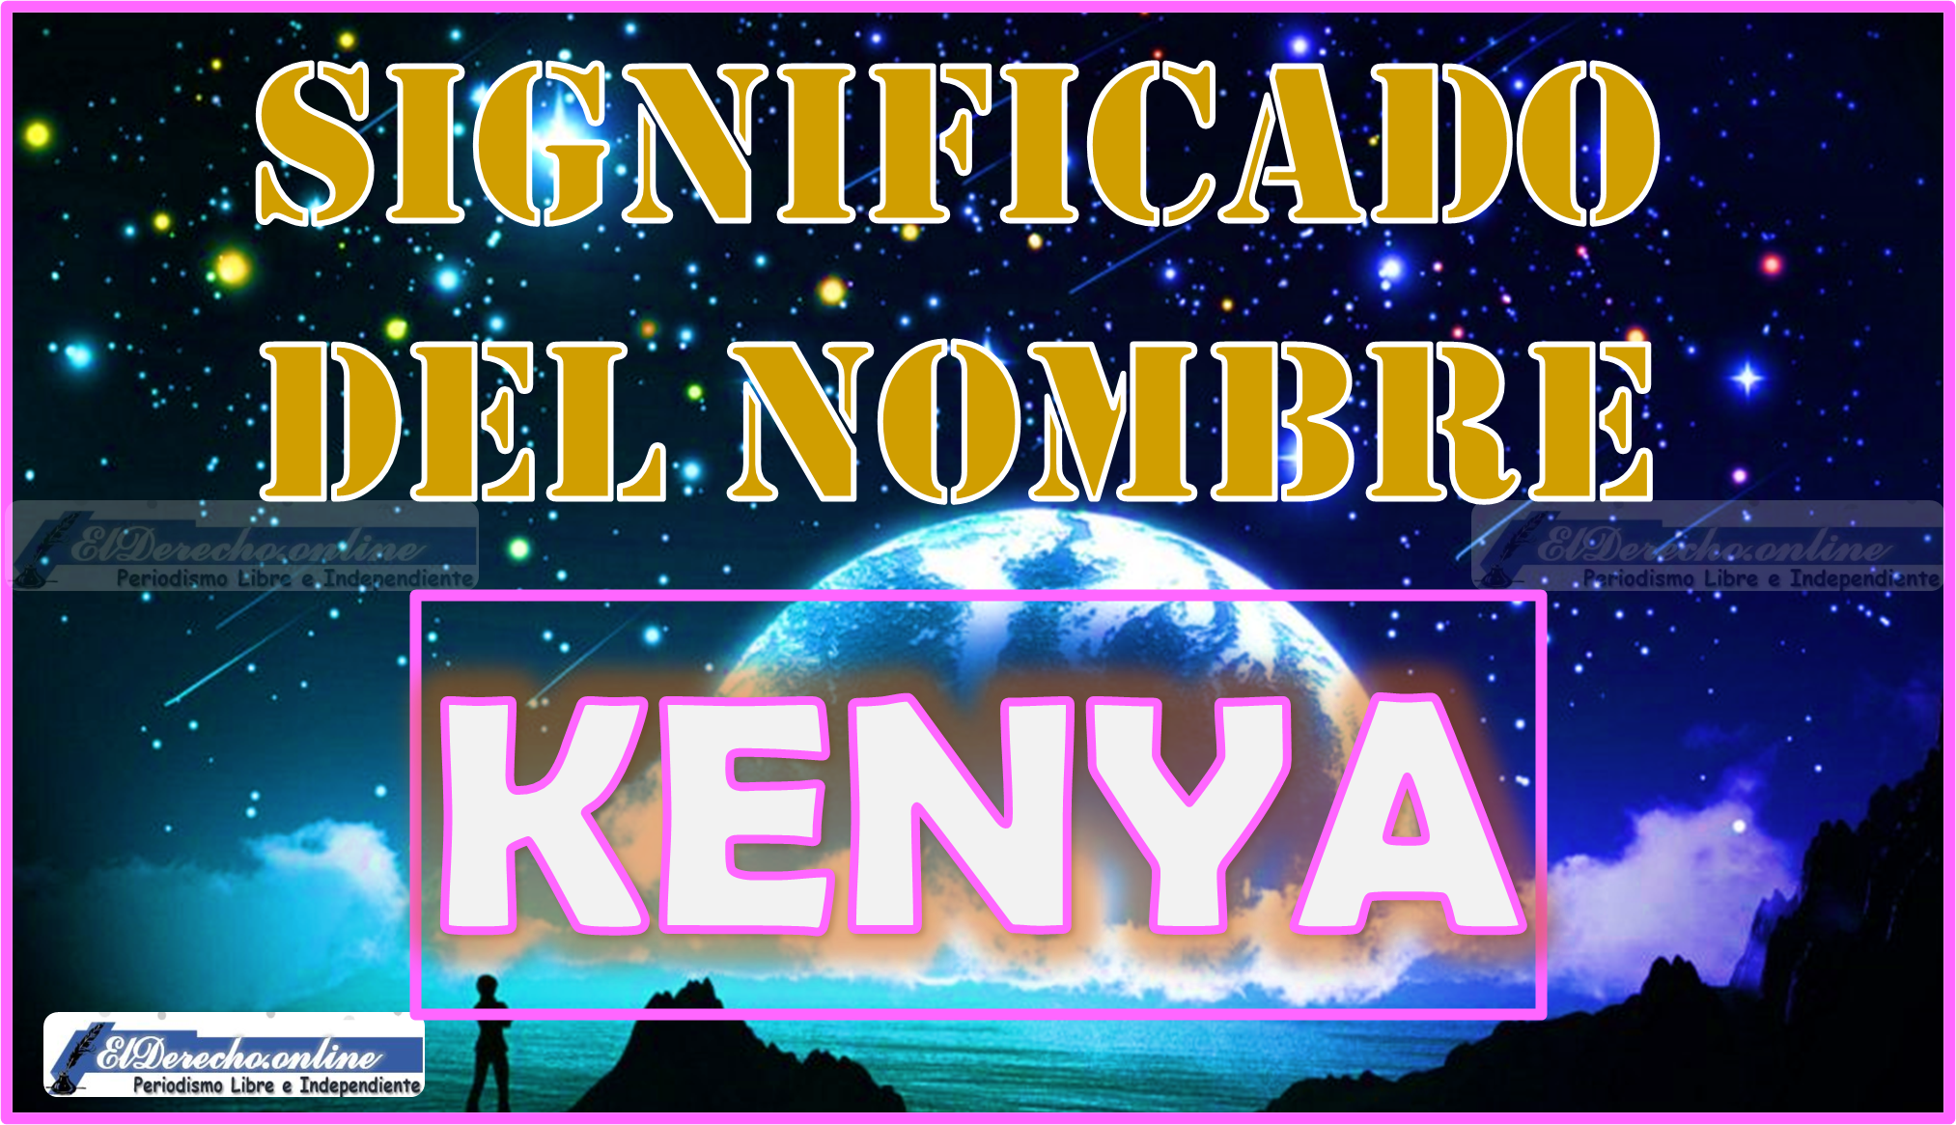 Significado del nombre Kenya, su origen y másV